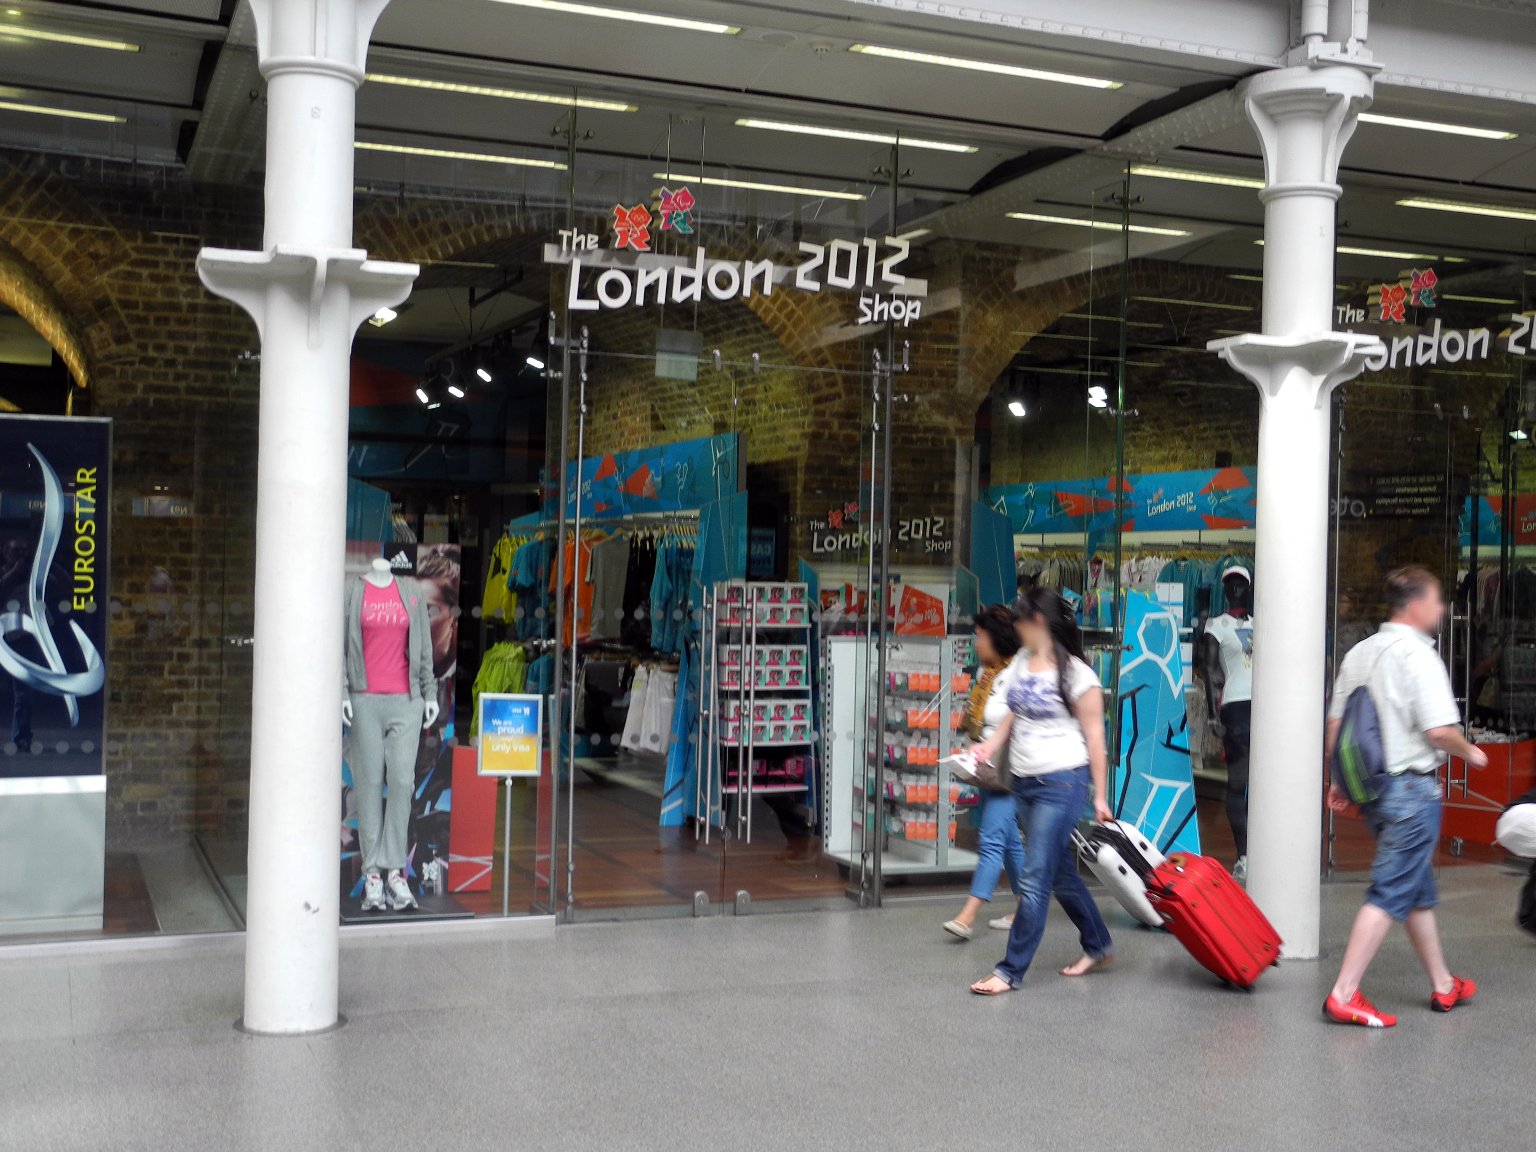 London 2012 Shop